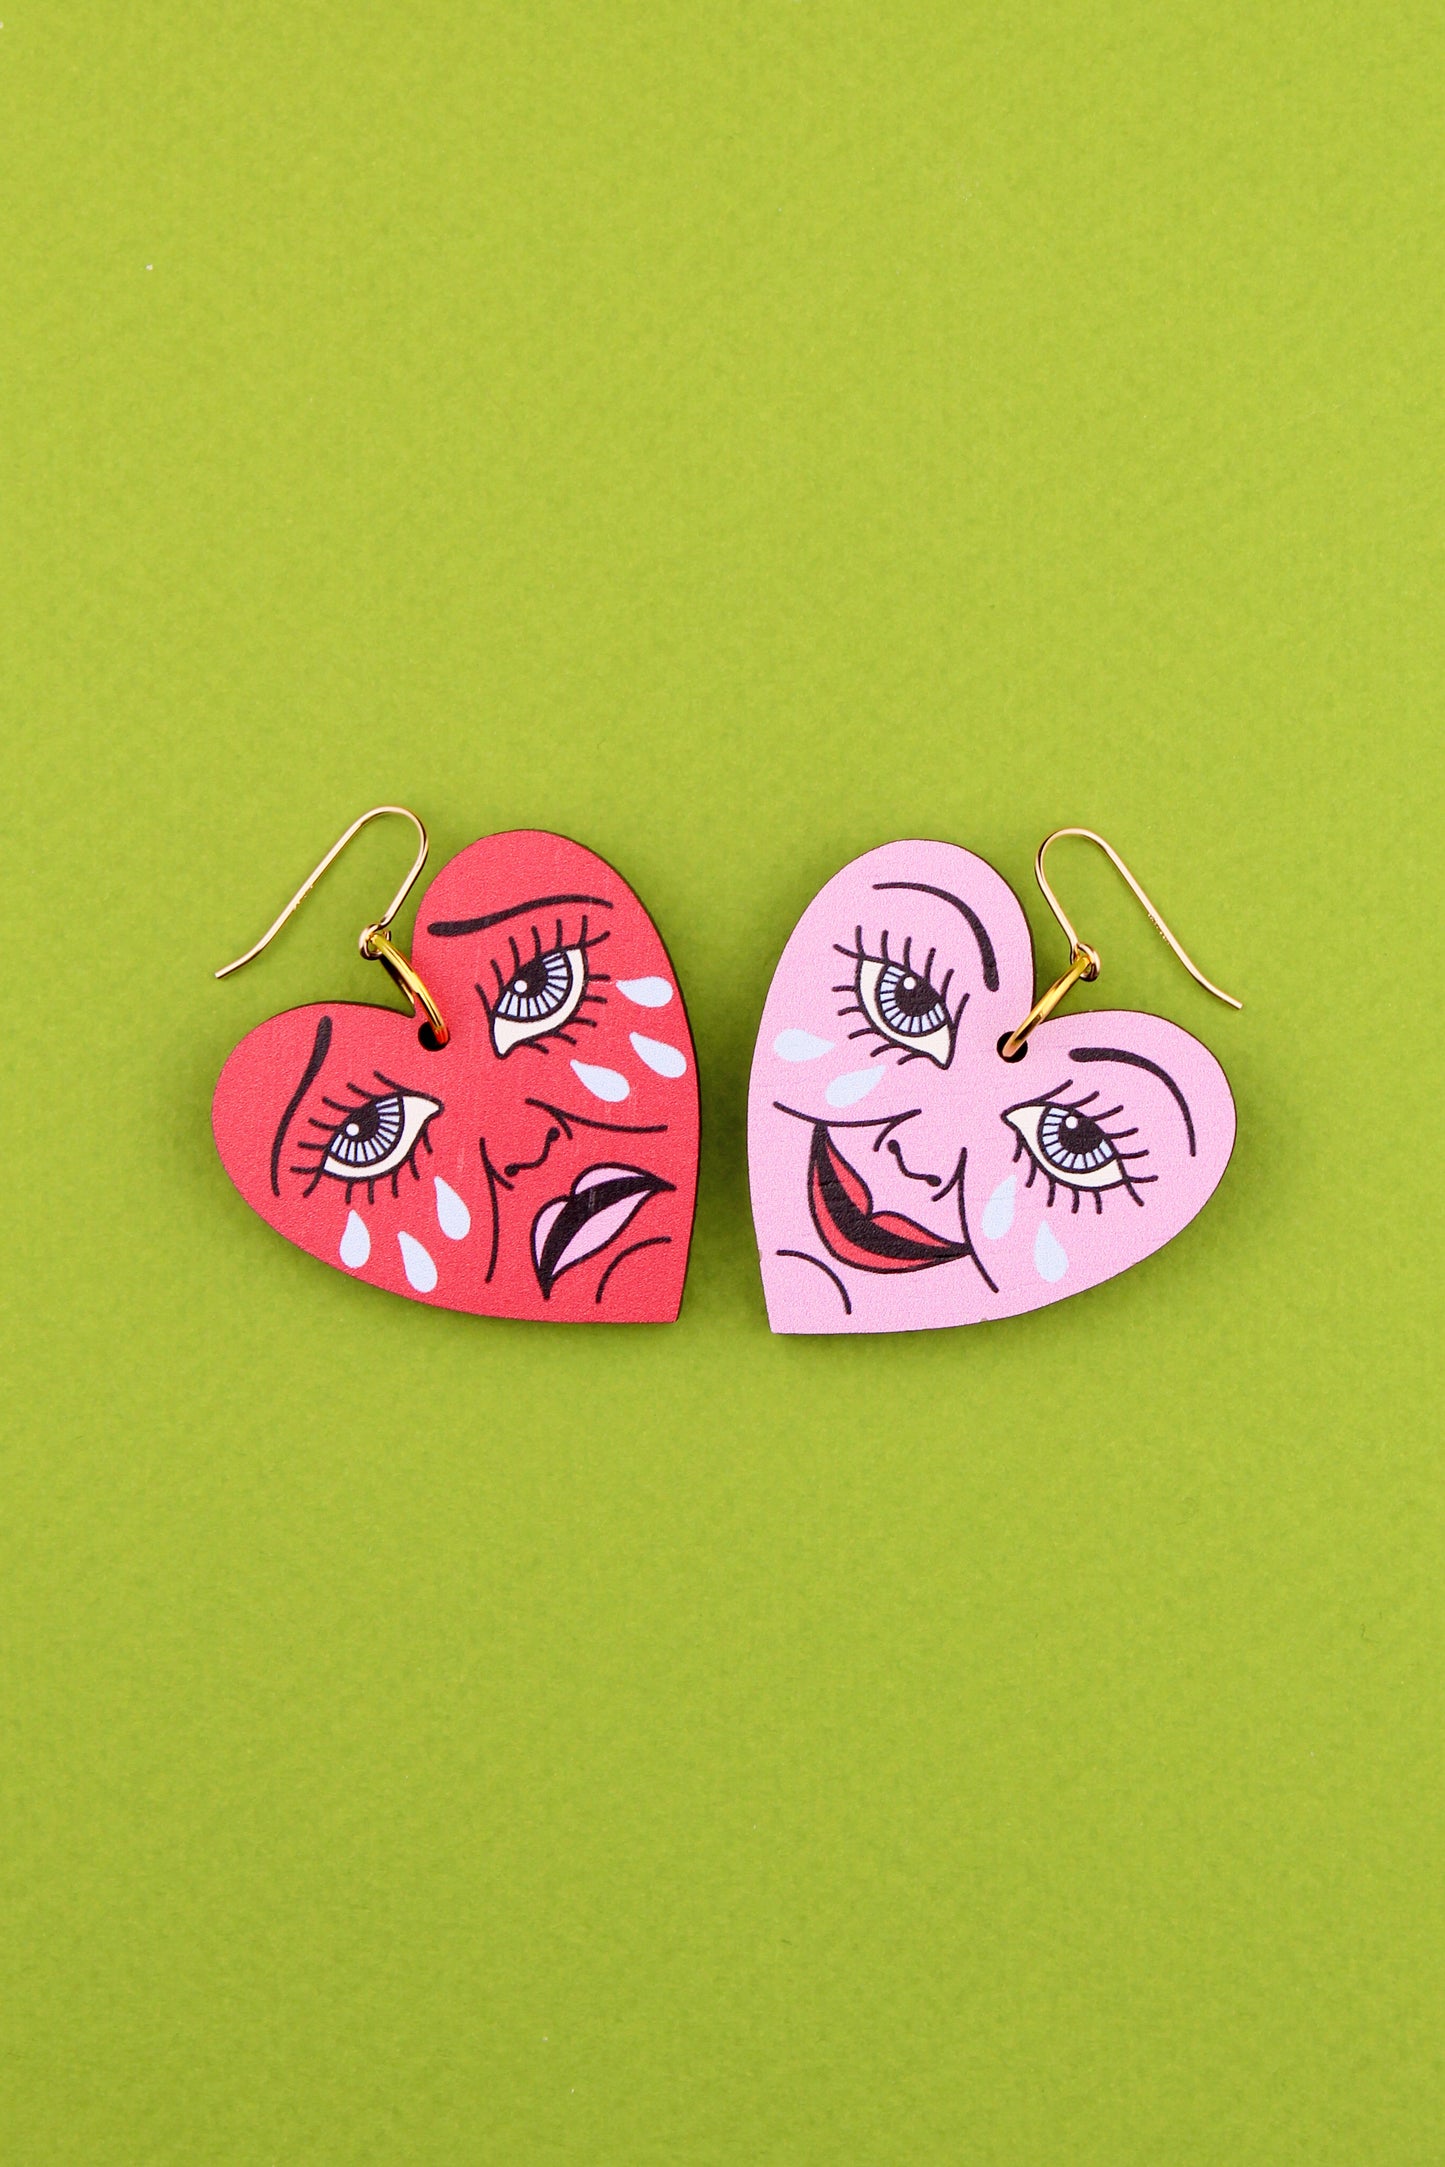 Red and Pink Mood Swings Earrings